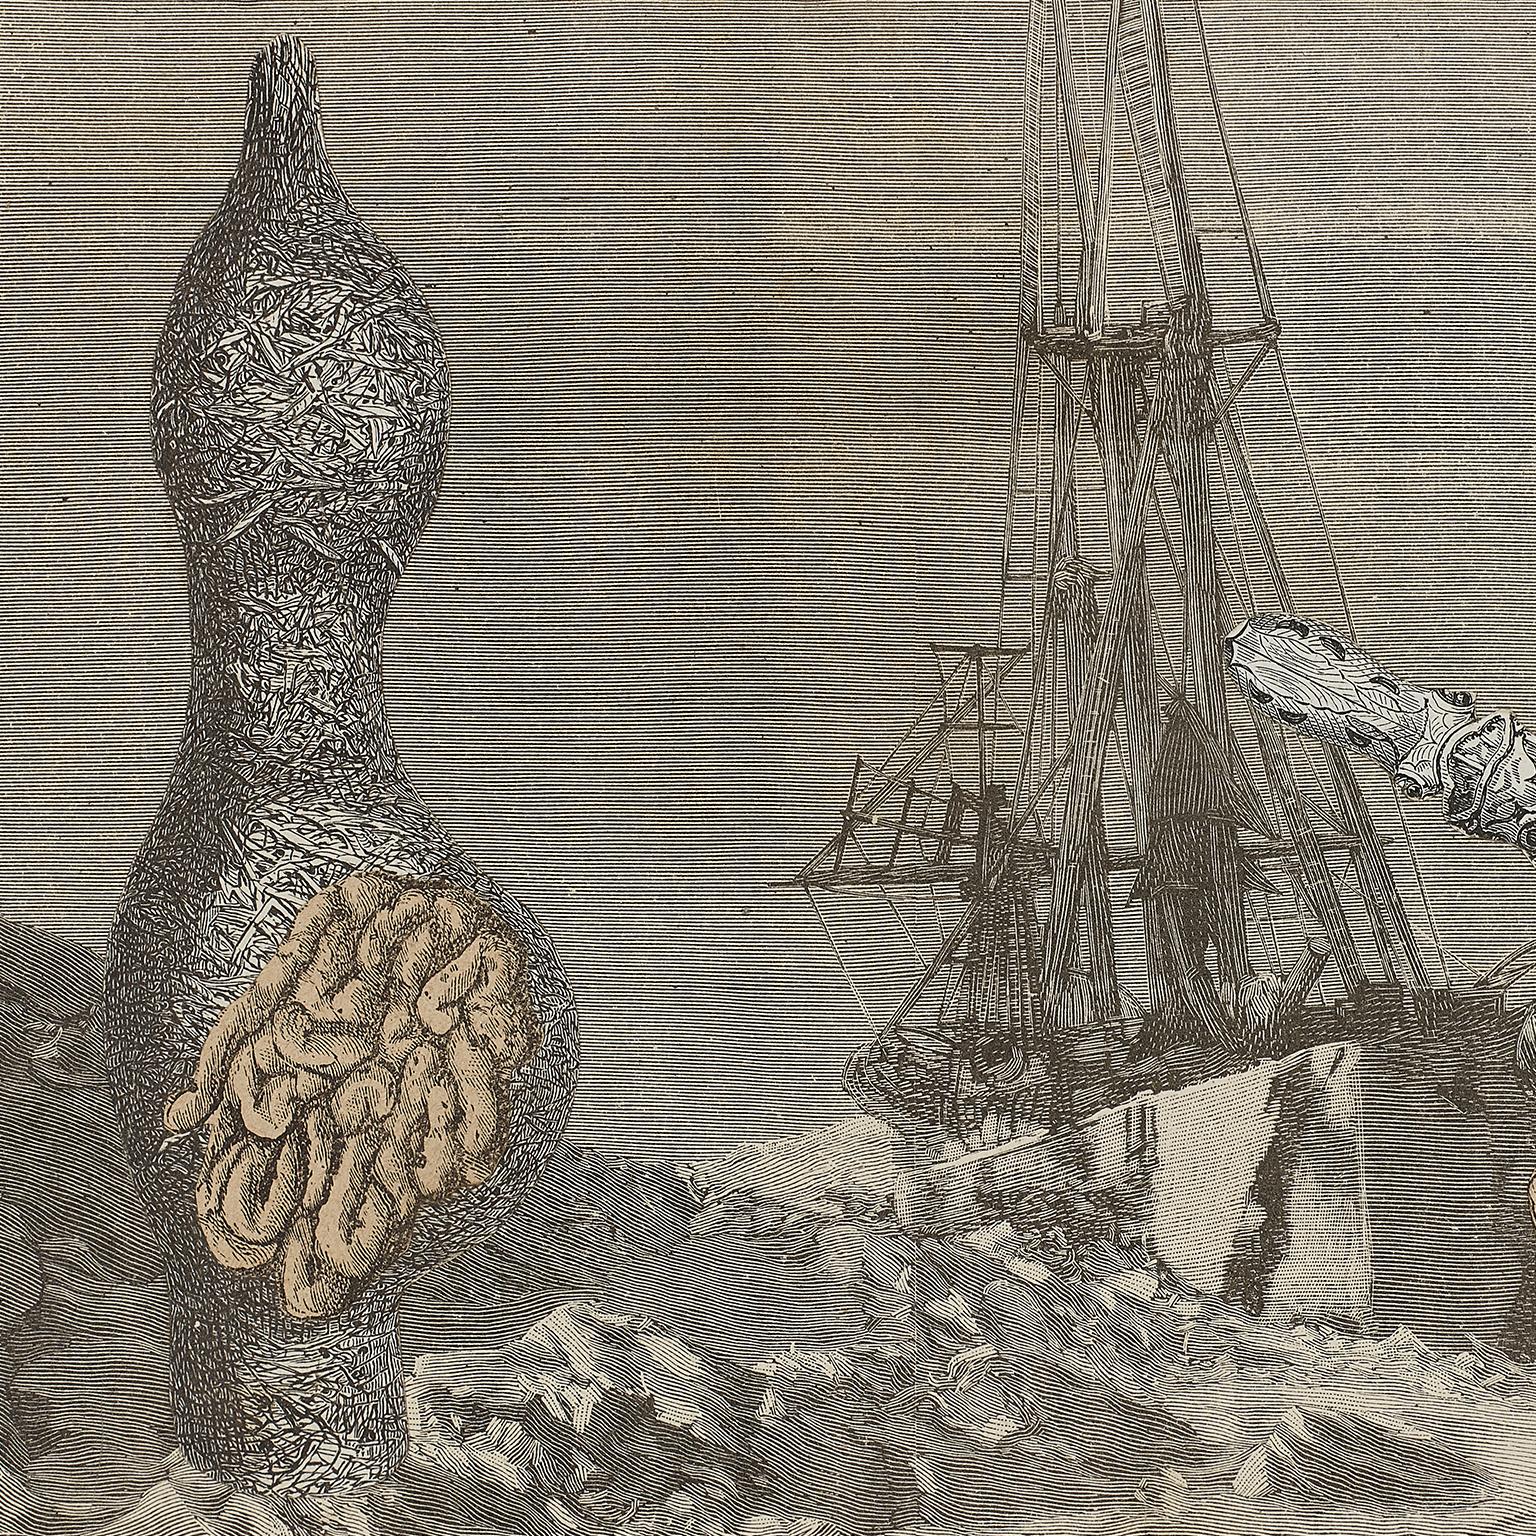 Max Bucaille ( 1906 -1996 ) . Französischer surrealistischer Künstler .
geboren 1906 in der Normandie.
Bild: 12 x 18 cm 
Seite :   21 x 30 cm
Gerahmt : 38 x 52 cm 
Max Bucaille hat ein Paar Schuhe und ein Paar Colleges, er hat viele illustrierte